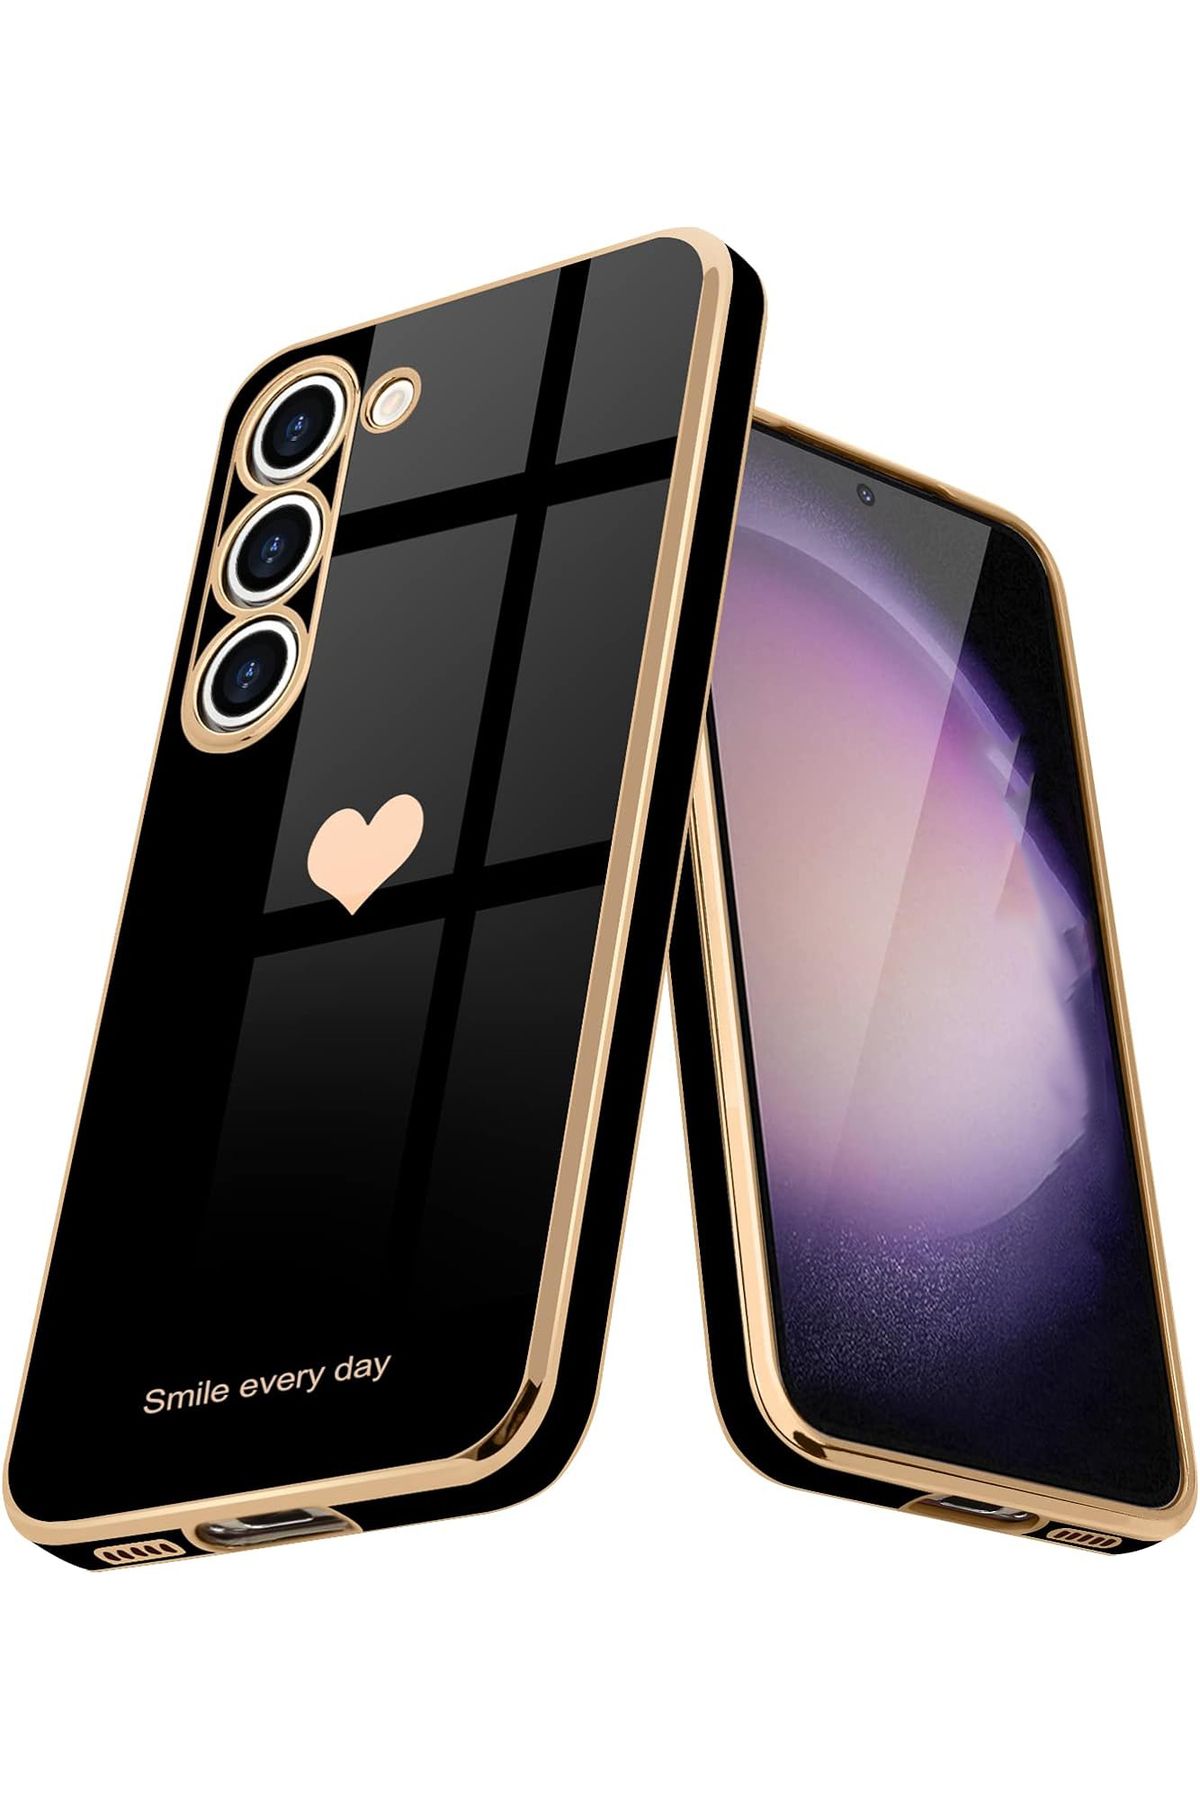 gaga elektronik Samsung Galaxy S20 FE İçin Lazer Kesim Kalp Desenli Kılıf